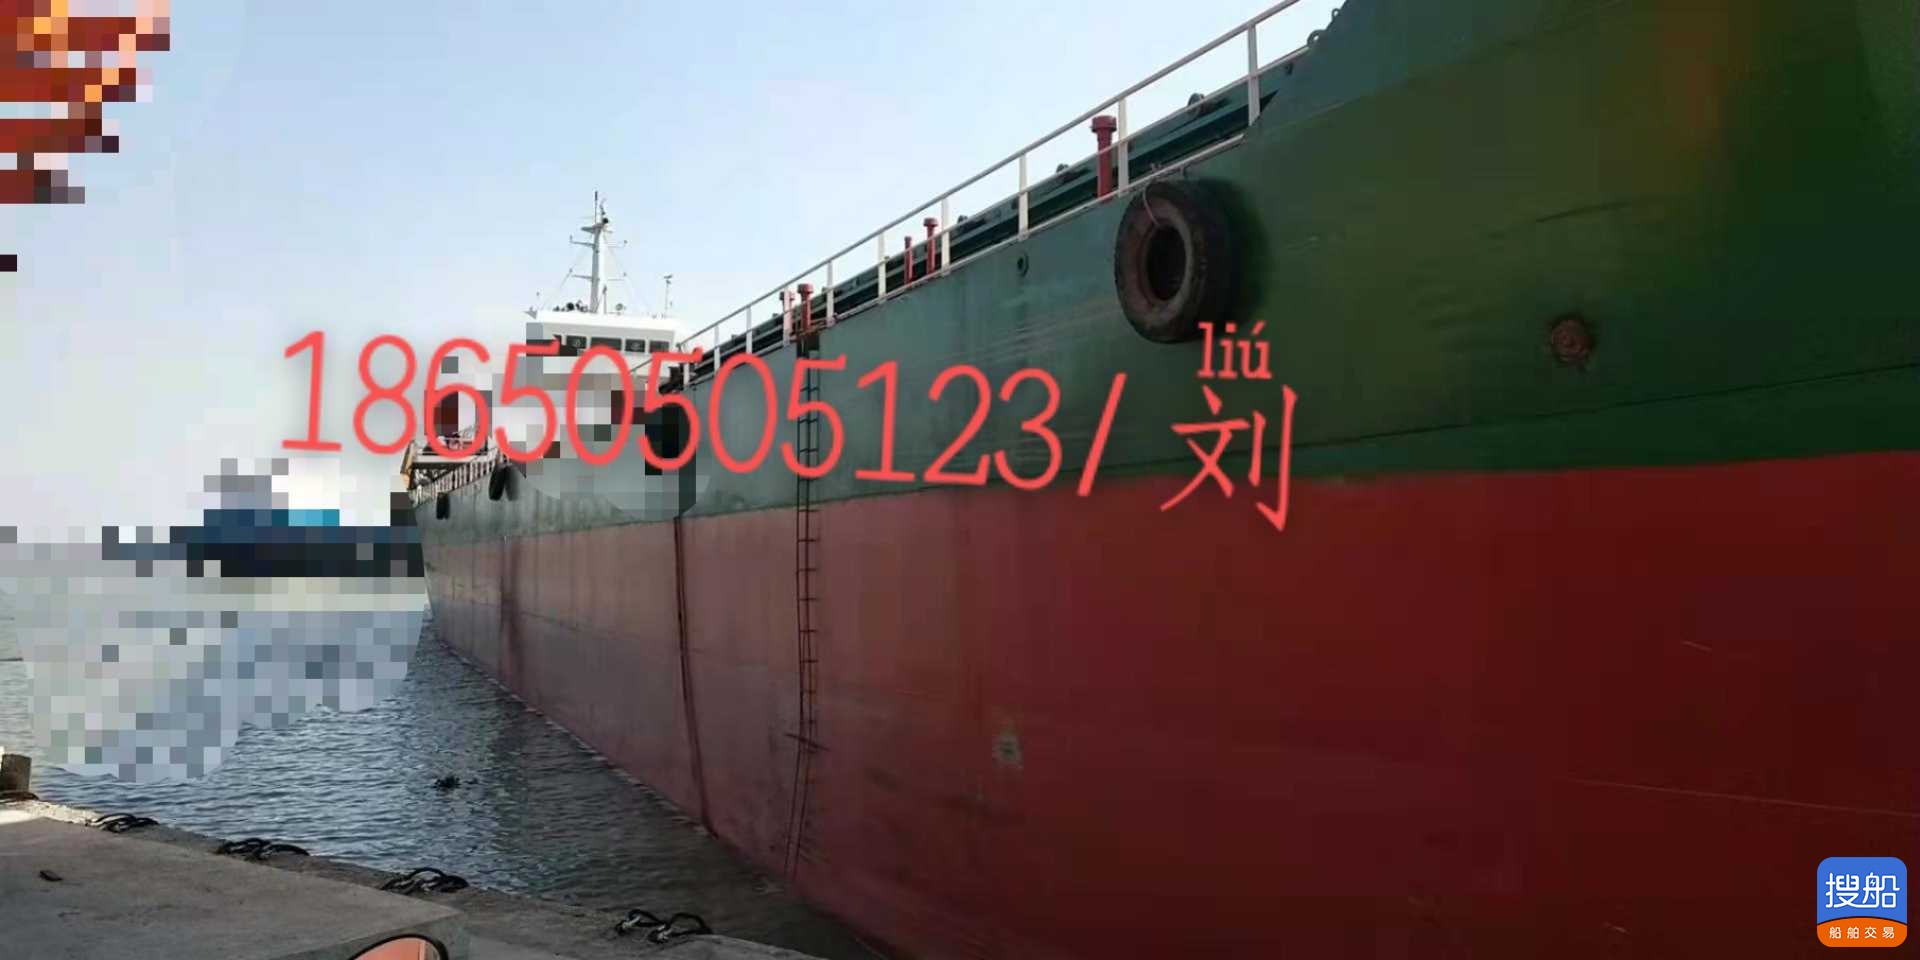 出售7300吨沿海双机货船